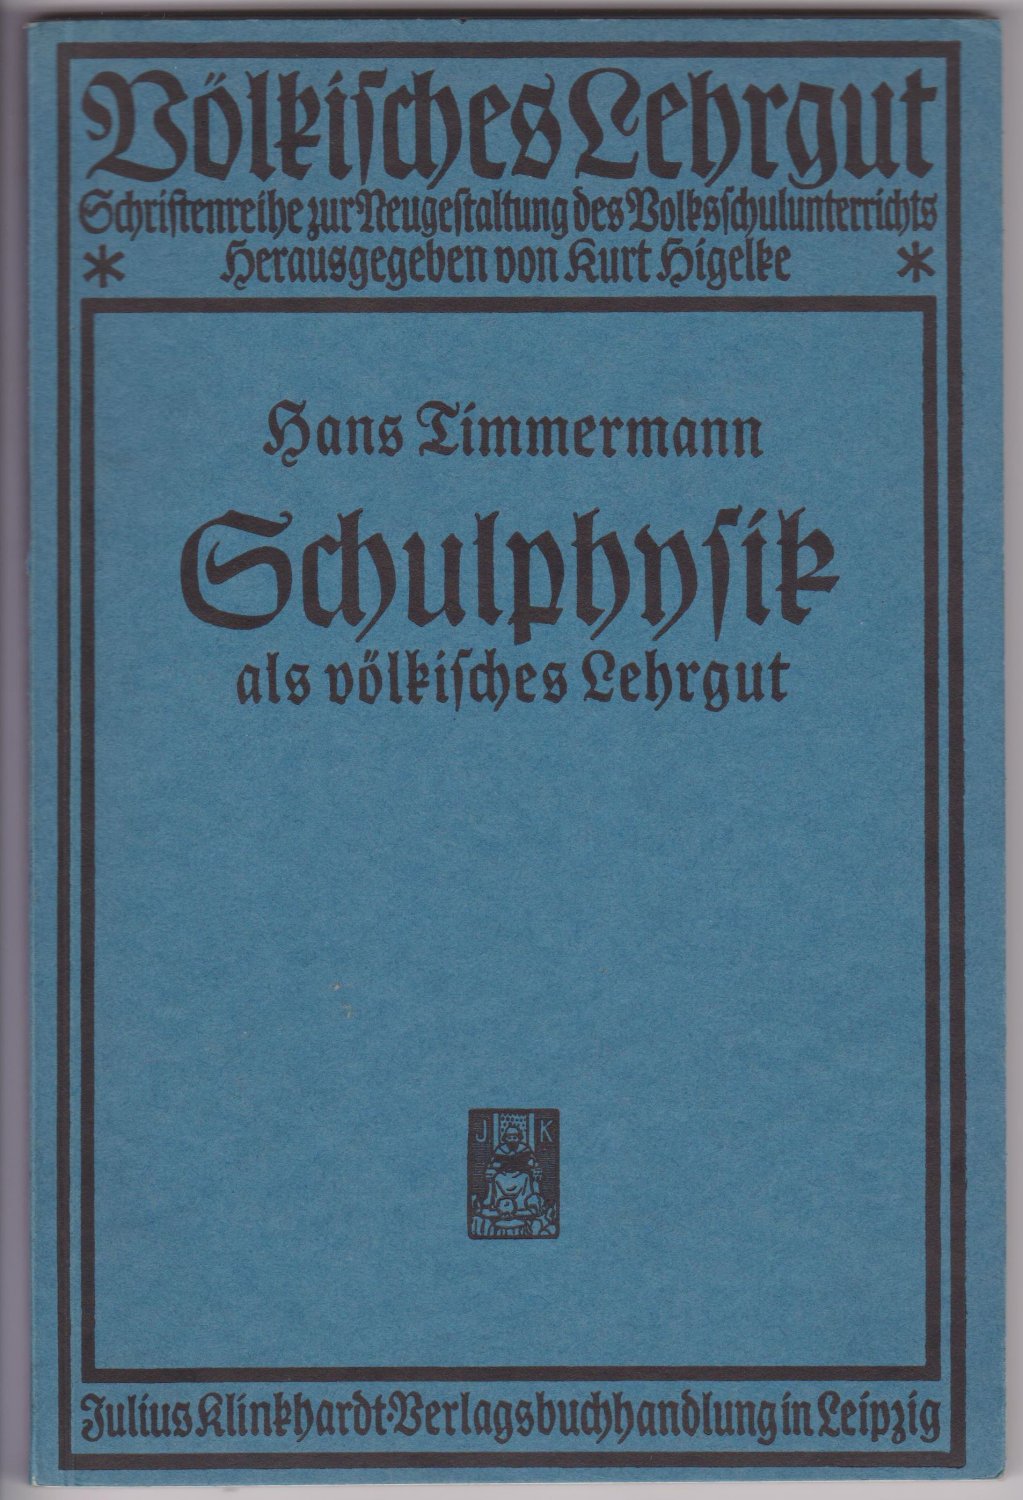 TIMMERMANN, Hans:  Schulphysik als völkisches Lehrgut. Mit 99 Abbildungen. 